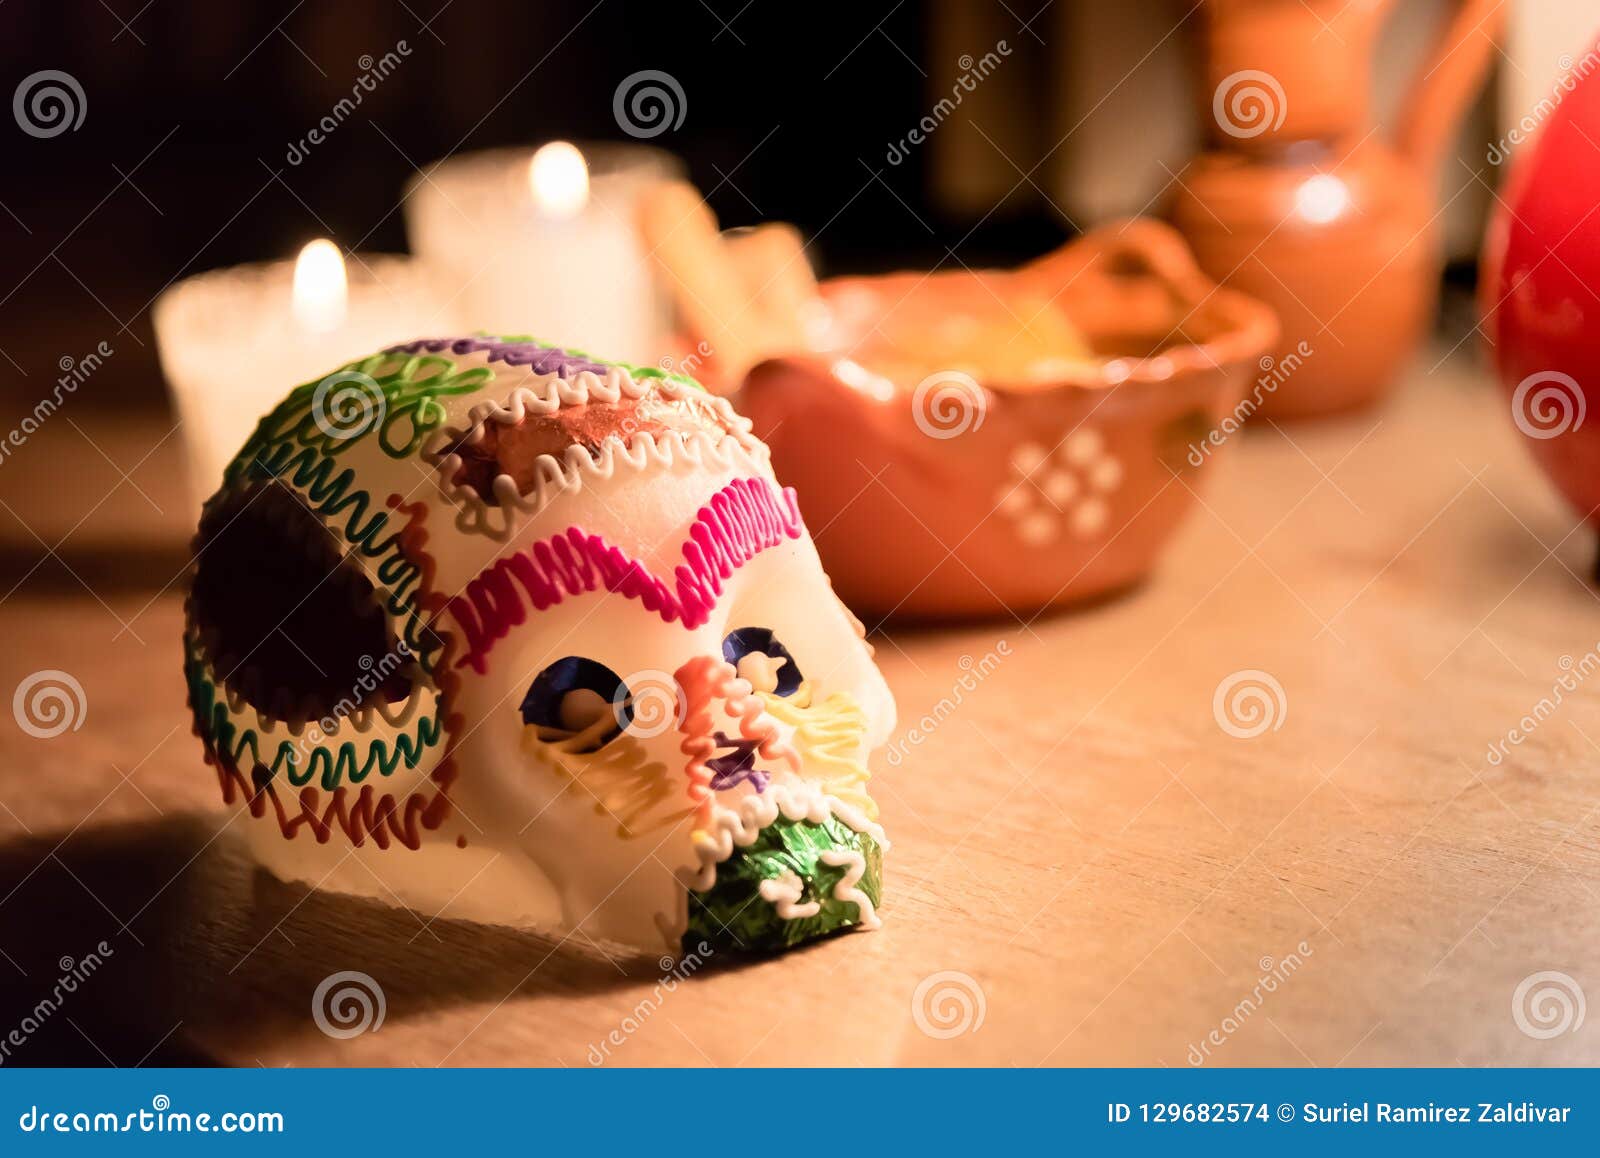 sugar skull and candles - calaverita - ofrenda dia de muertos